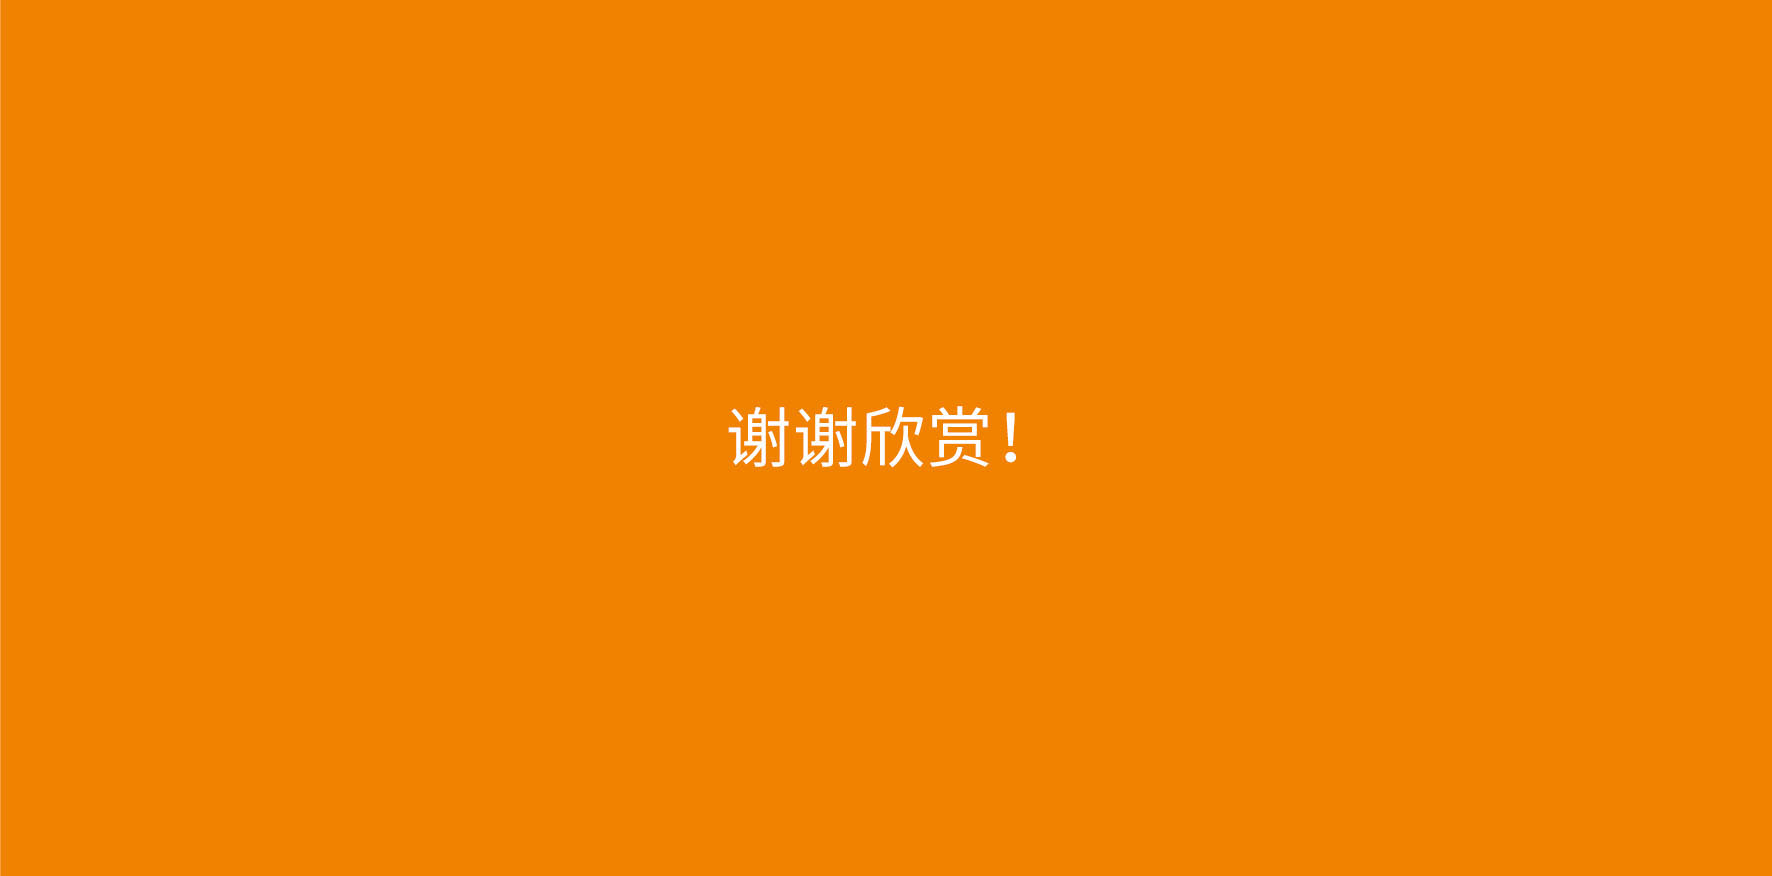 深圳养生logo设计-智慧美好生活标志设计21.jpg